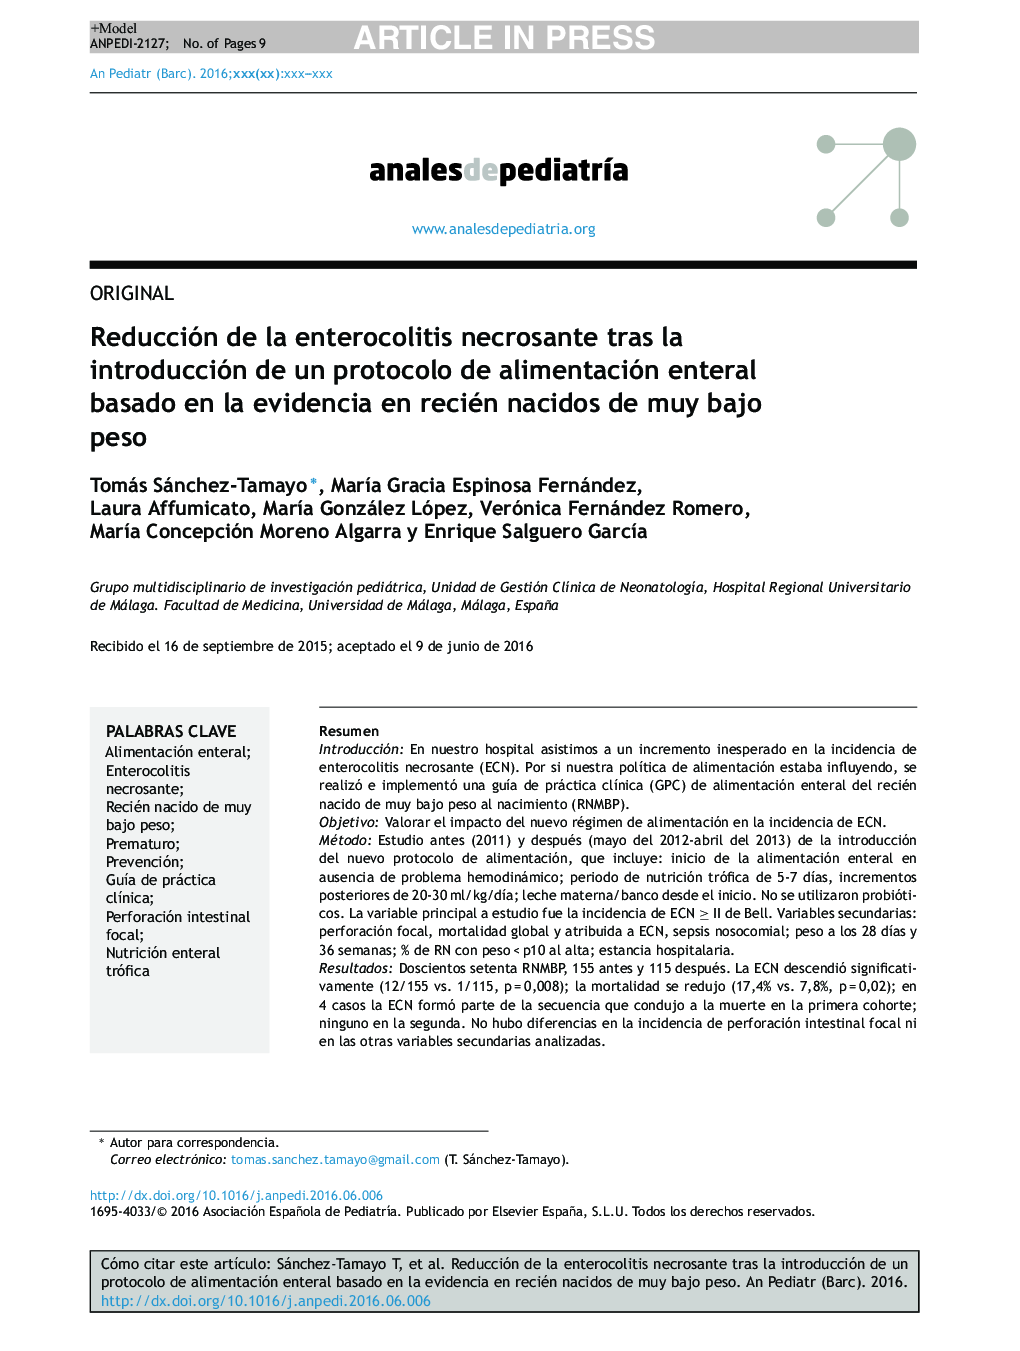 Reducción de la enterocolitis necrosante tras la introducción de un protocolo de alimentación enteral basado en la evidencia en recién nacidos de muy bajo peso